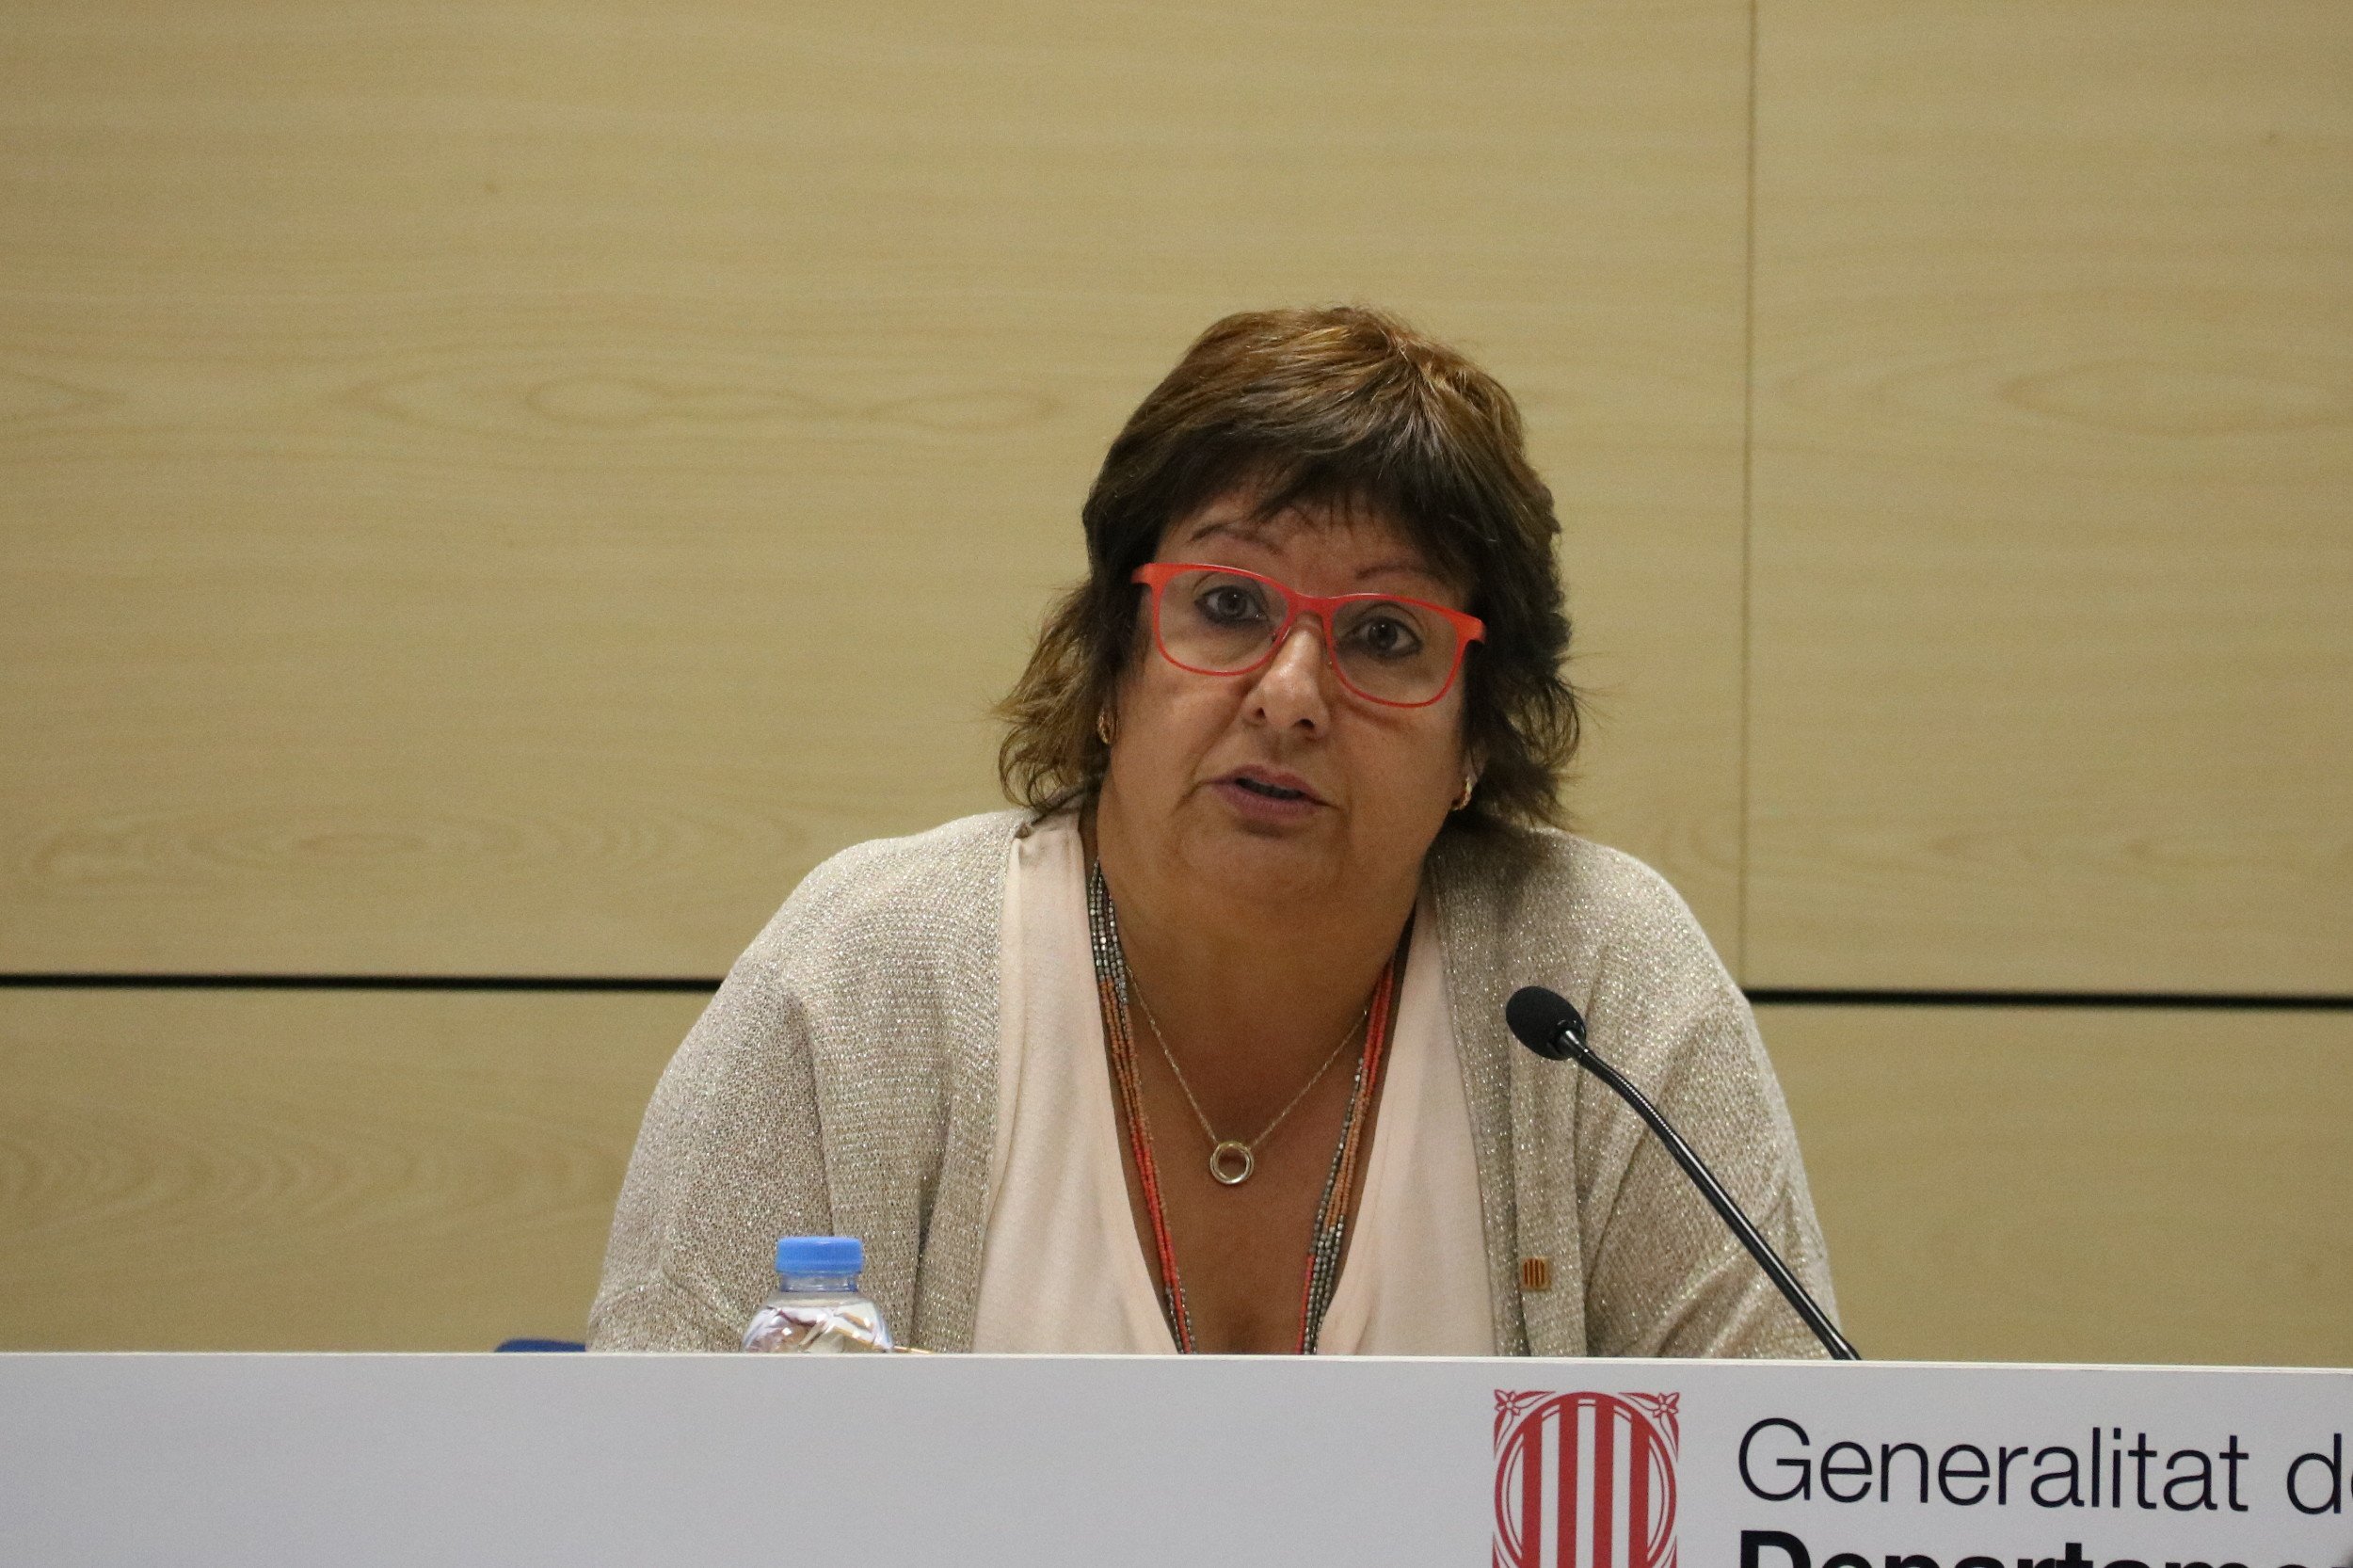 Les pensions d'un Estat català: "garantides, acordades i sostenibles"